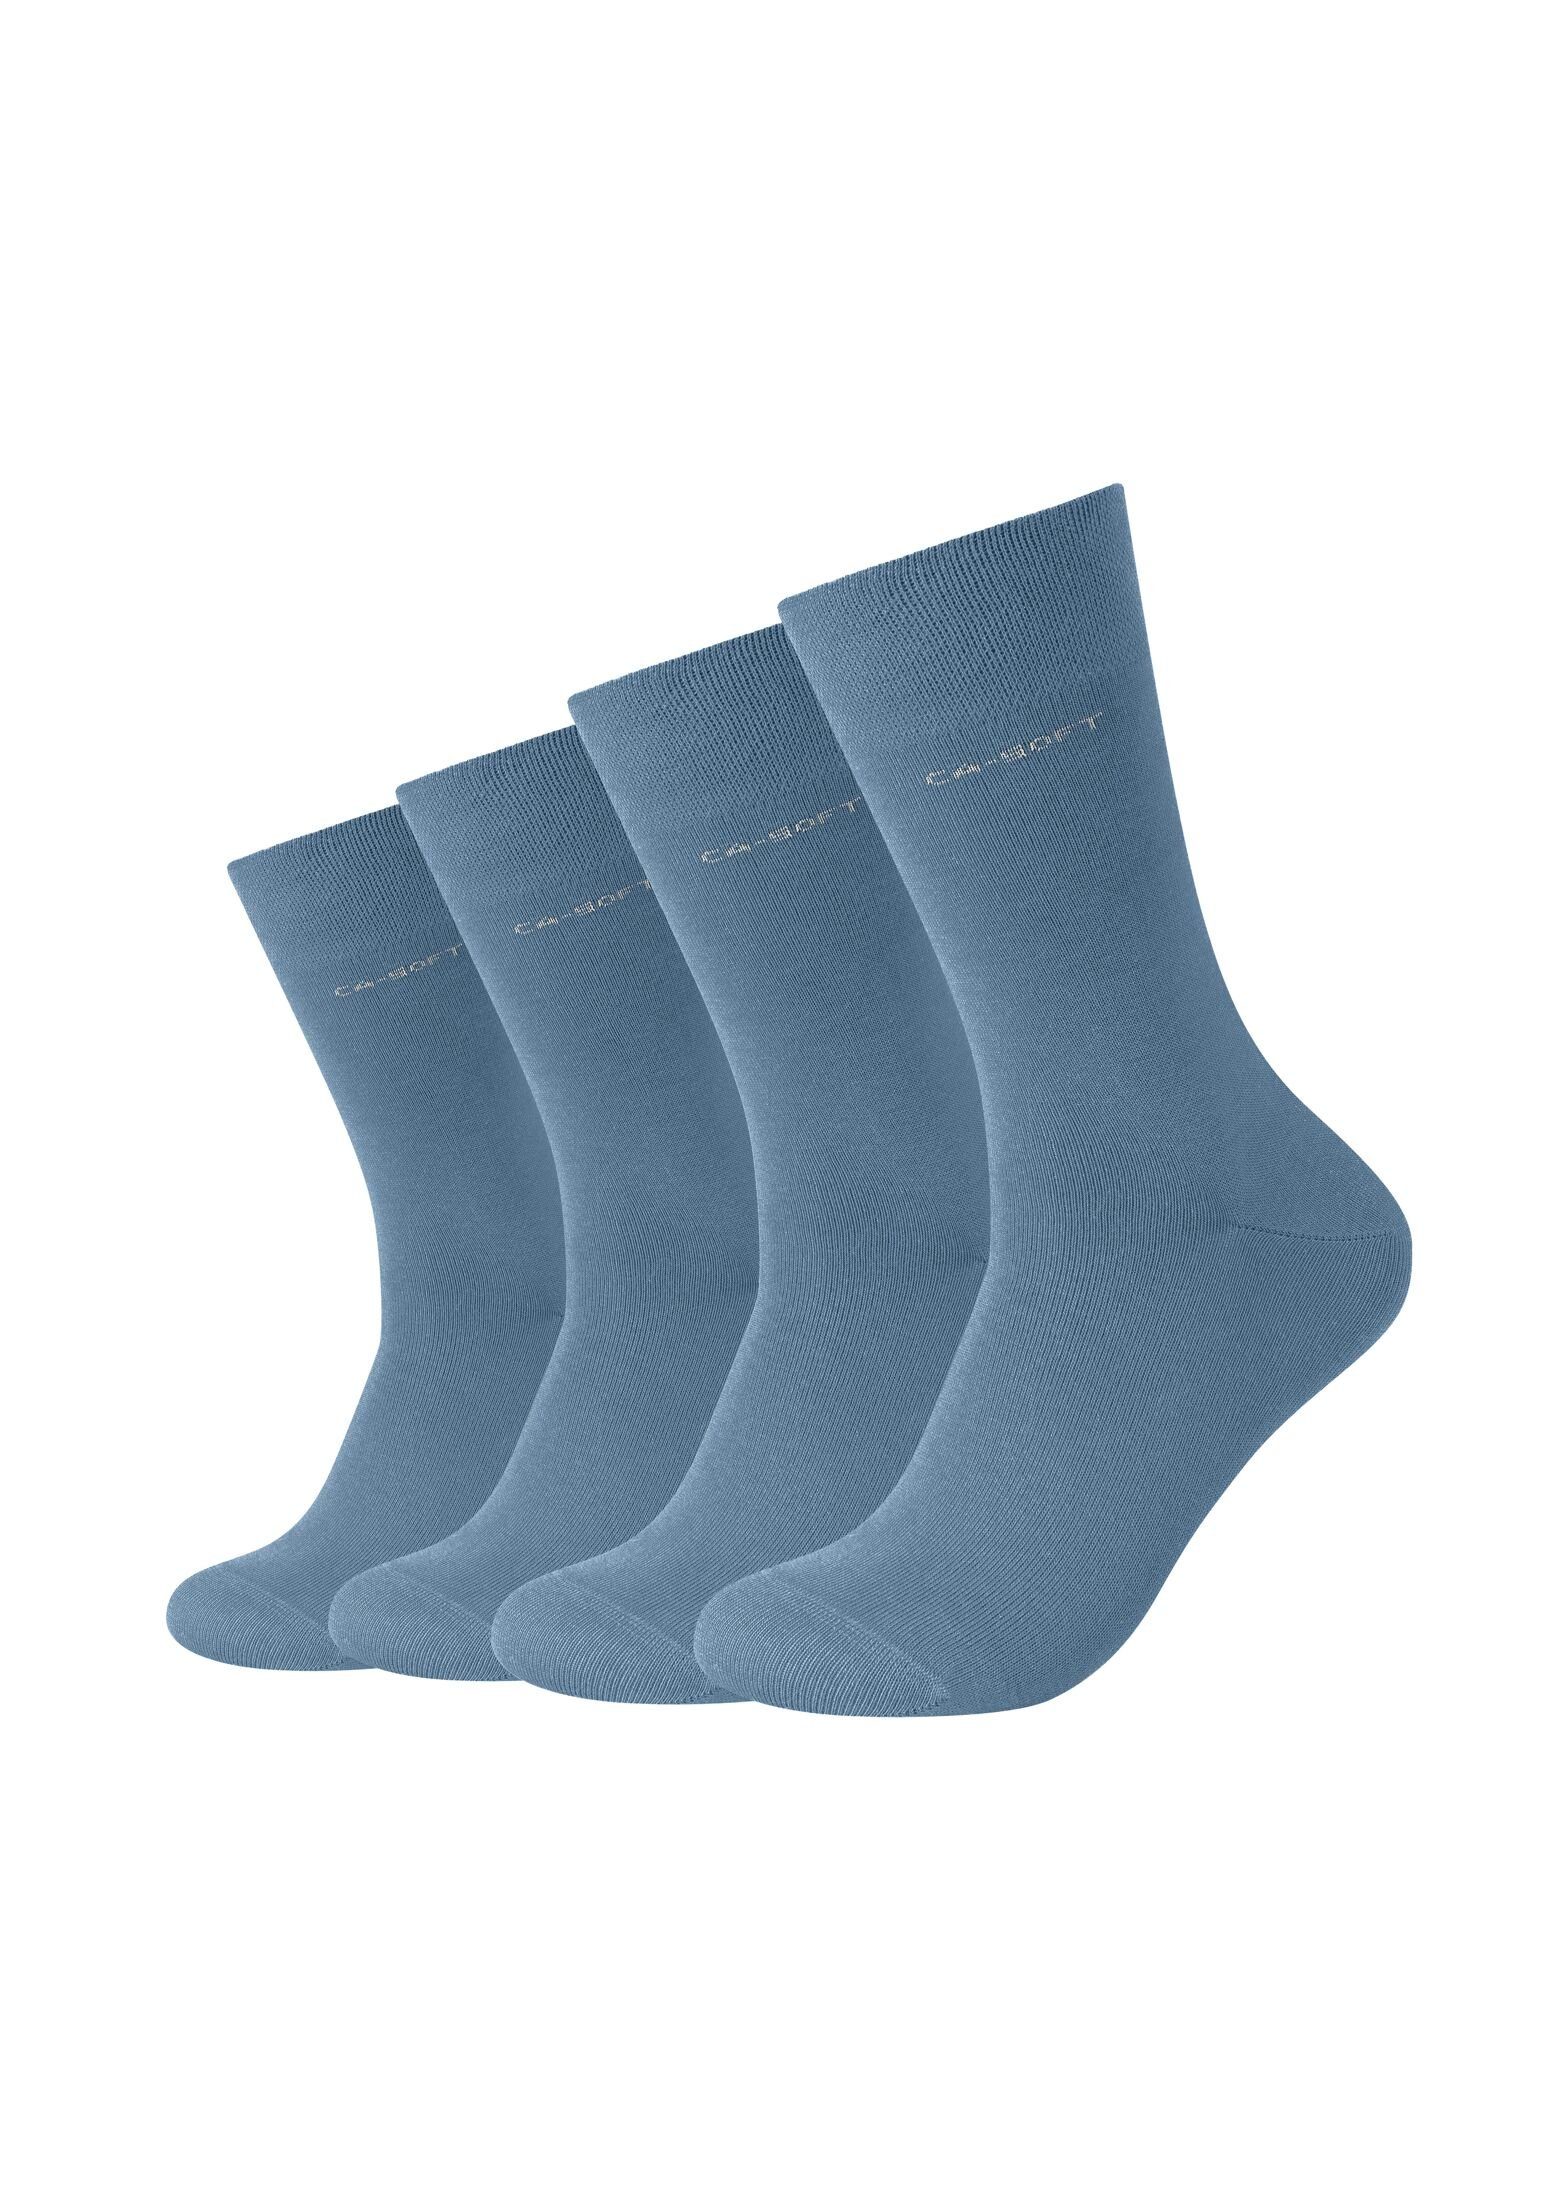 Camano Socken Socken für Herren Bequem Komfortbund blue captain's und Damen Businesssocken